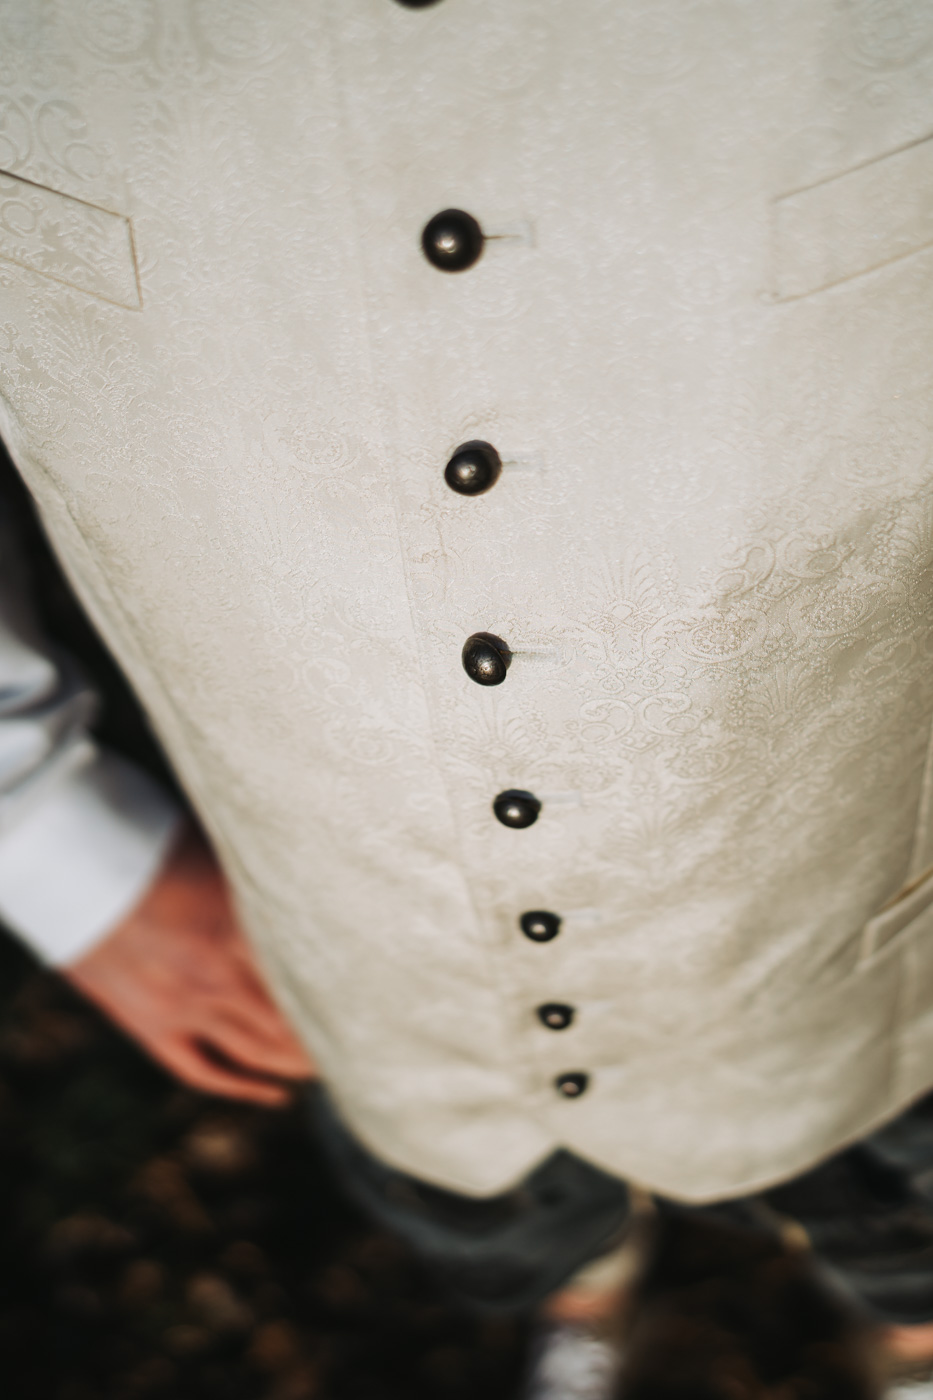 Detailaufnahme der eleganten Weste eines Bräutigams mit feinen Mustern und hochwertigen Stoffen. Die Weste ist sorgfältig über einem weißen Hemd getragen, mit einem sichtbaren Teil der Krawatte oder Fliege. Der Fokus liegt auf den Details der Weste, einschließlich der Knöpfe und des Stoffmusters.